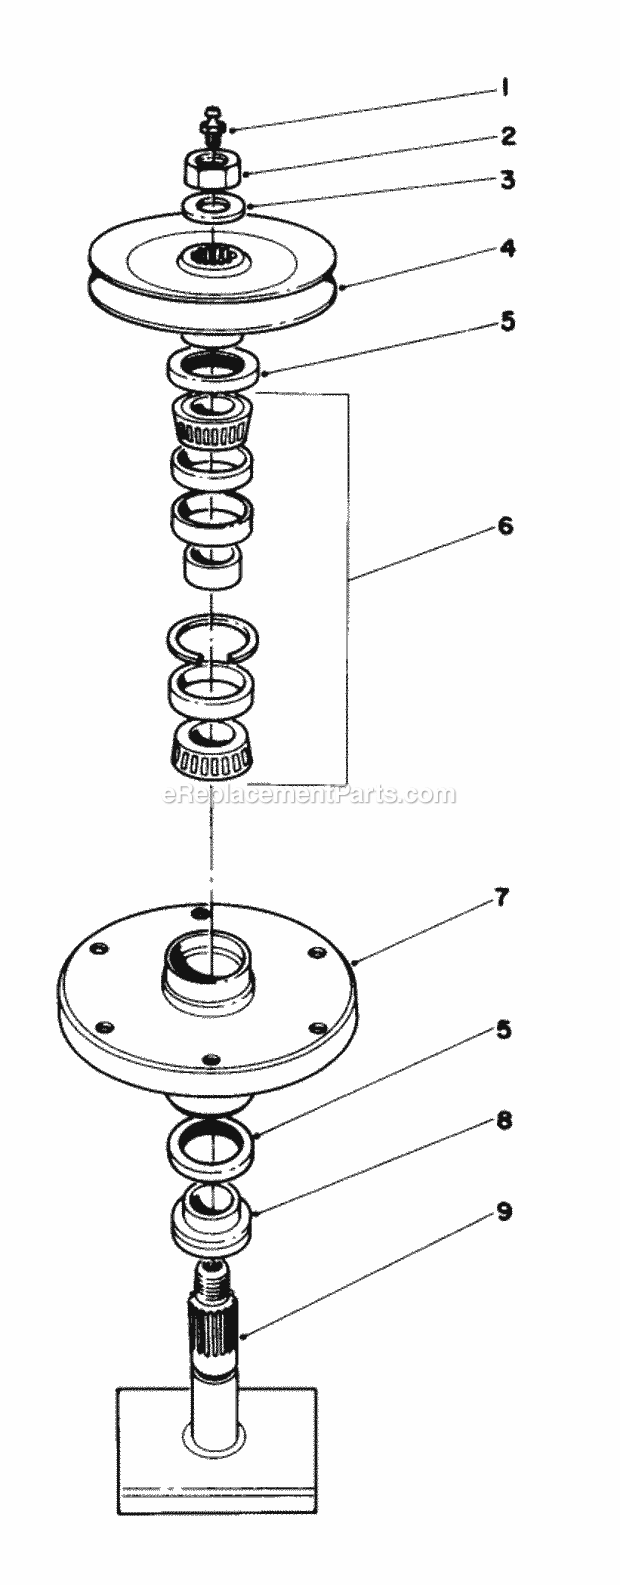 Toro 30768 (8000001-8999999) (1988) 52-in. Rear Discharge Mower Drive Spindle N0. 27-0871 Diagram